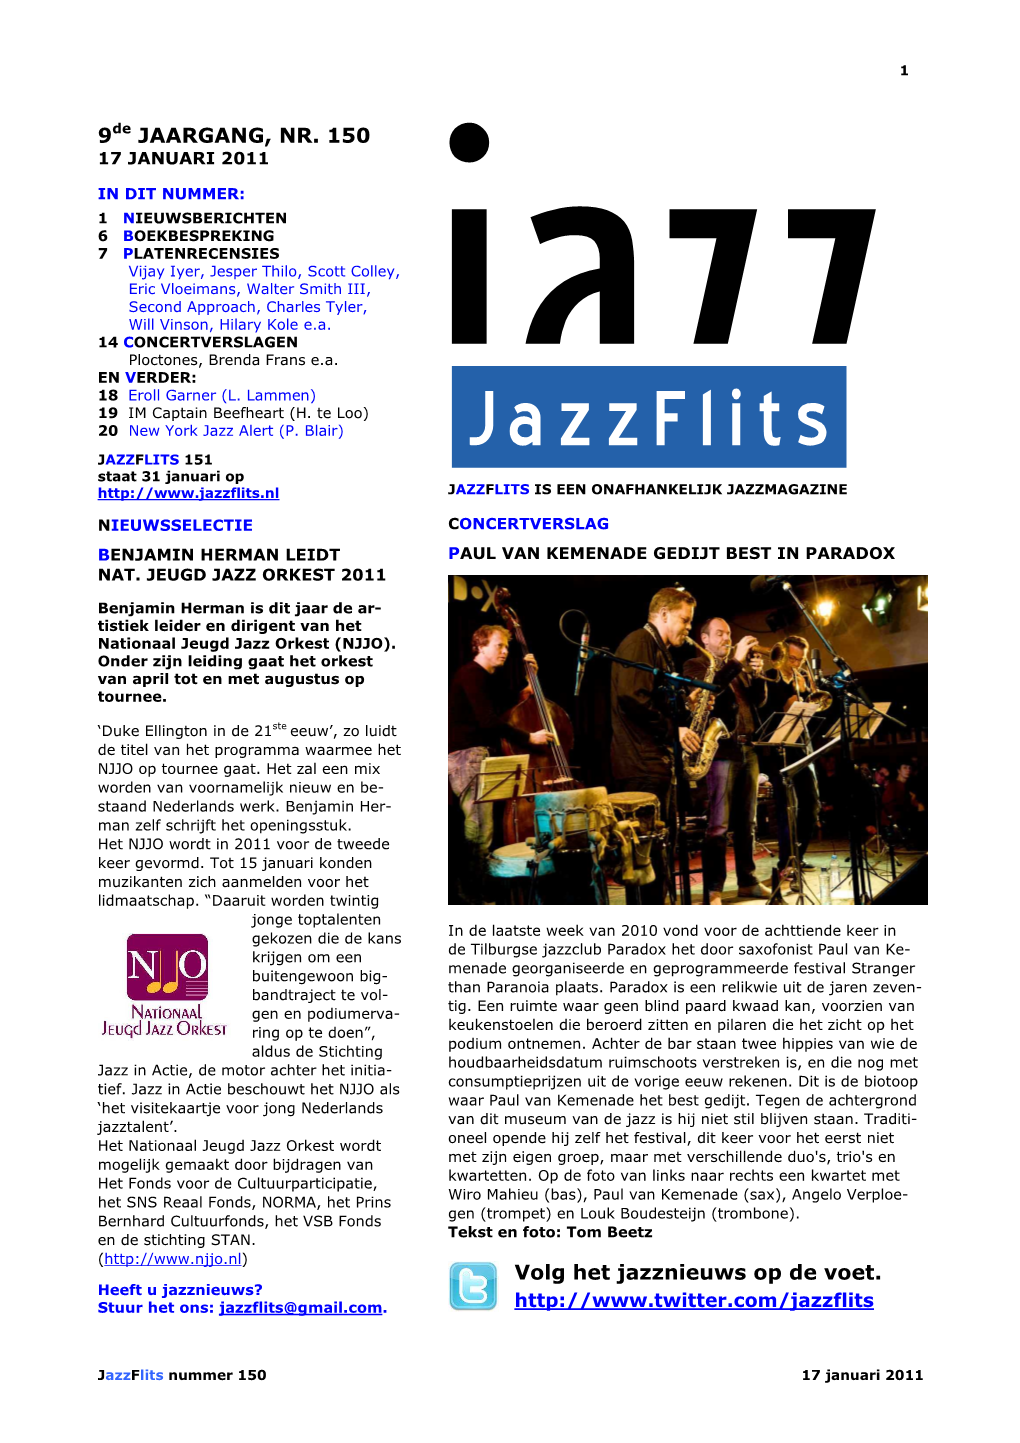 9De JAARGANG, NR. 150 Volg Het Jazznieuws Op De Voet